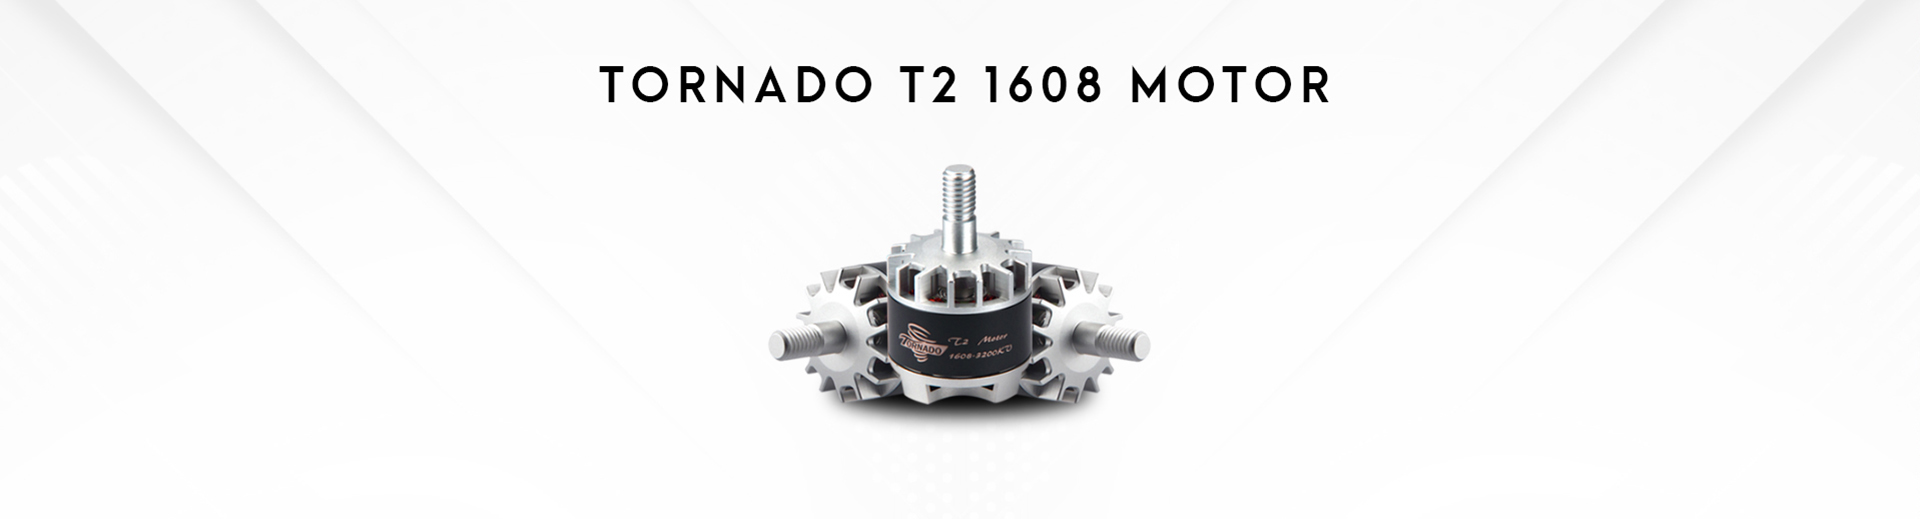 Tornado T2 1608 Motor